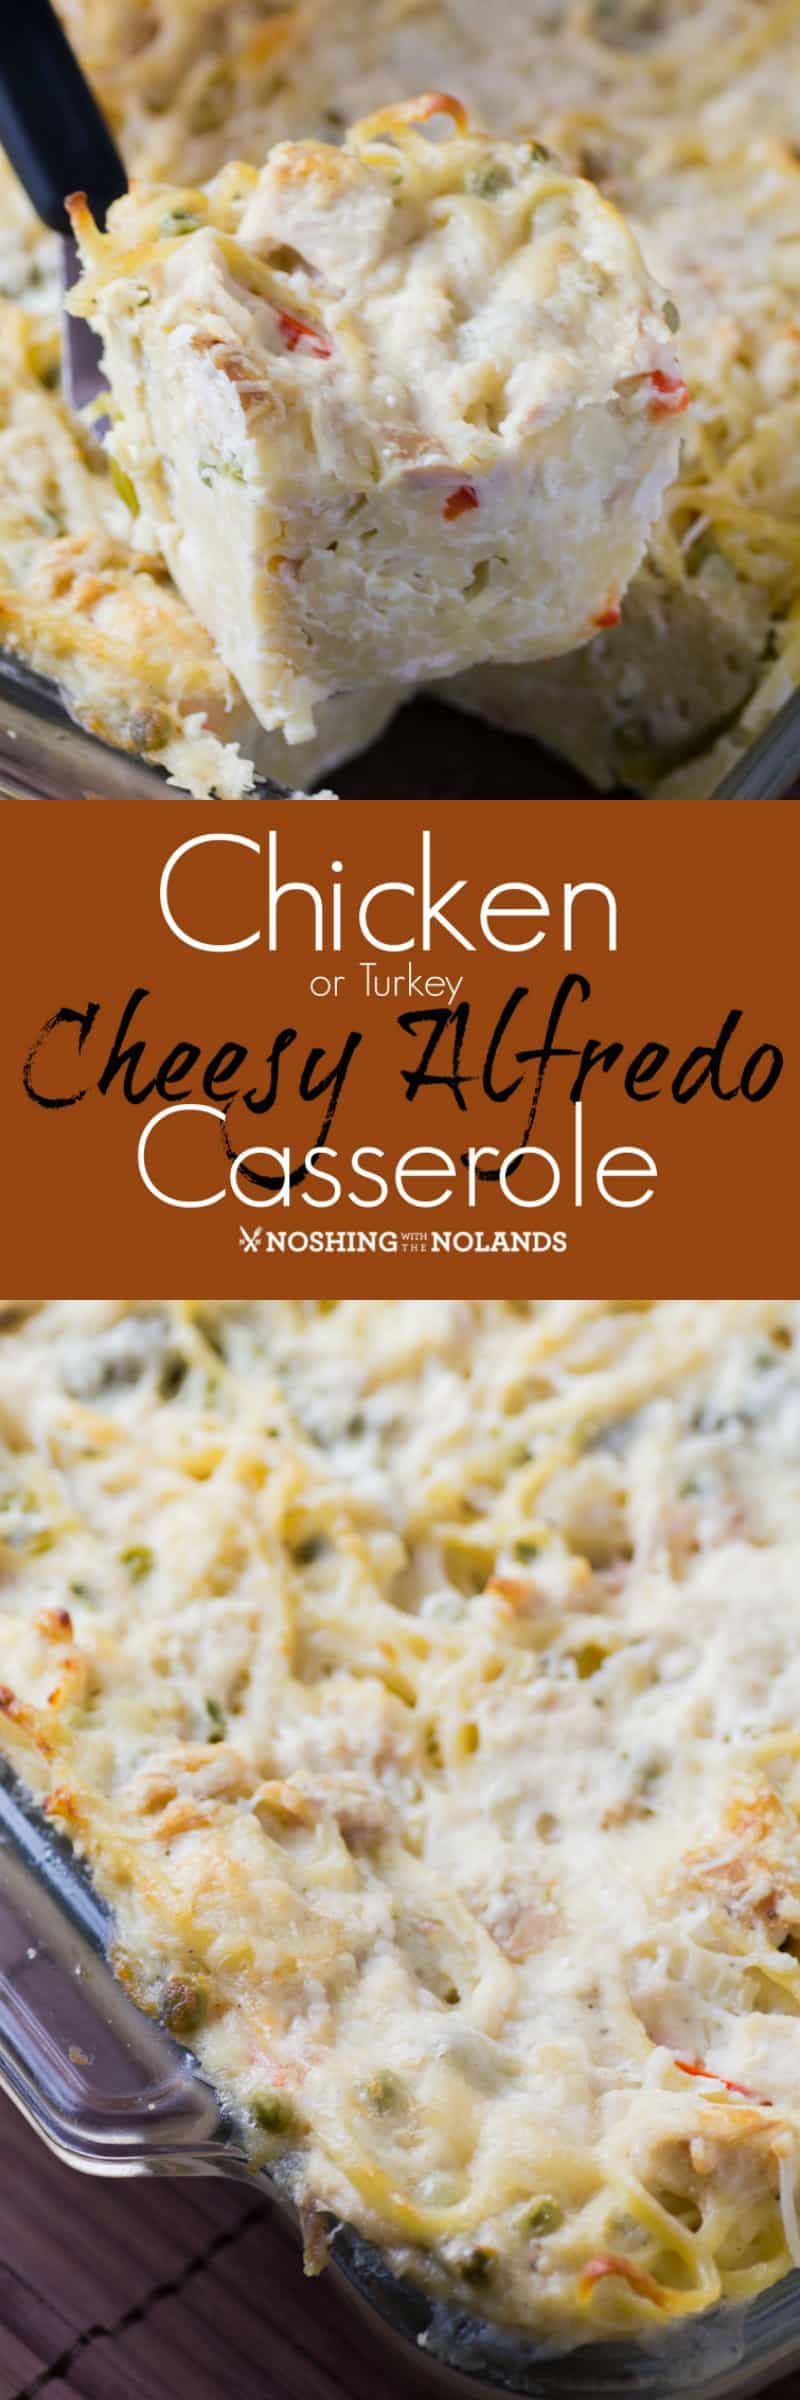 Chicken {Turkey} Cheesy Alfredo Casserole